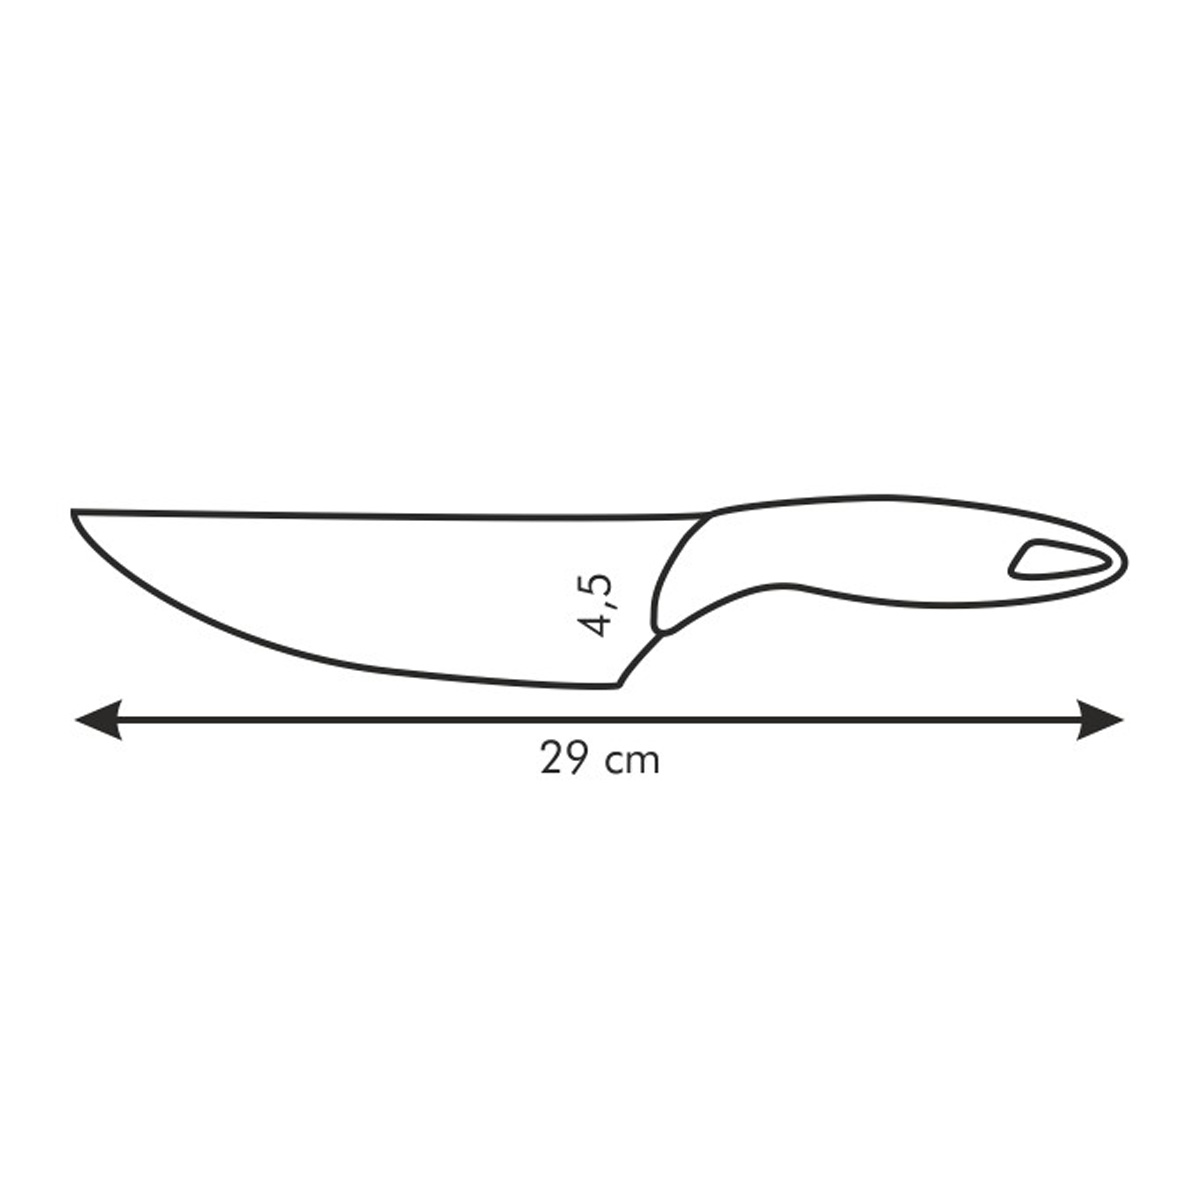 Nůž kuchařský PRESTO 17 cm